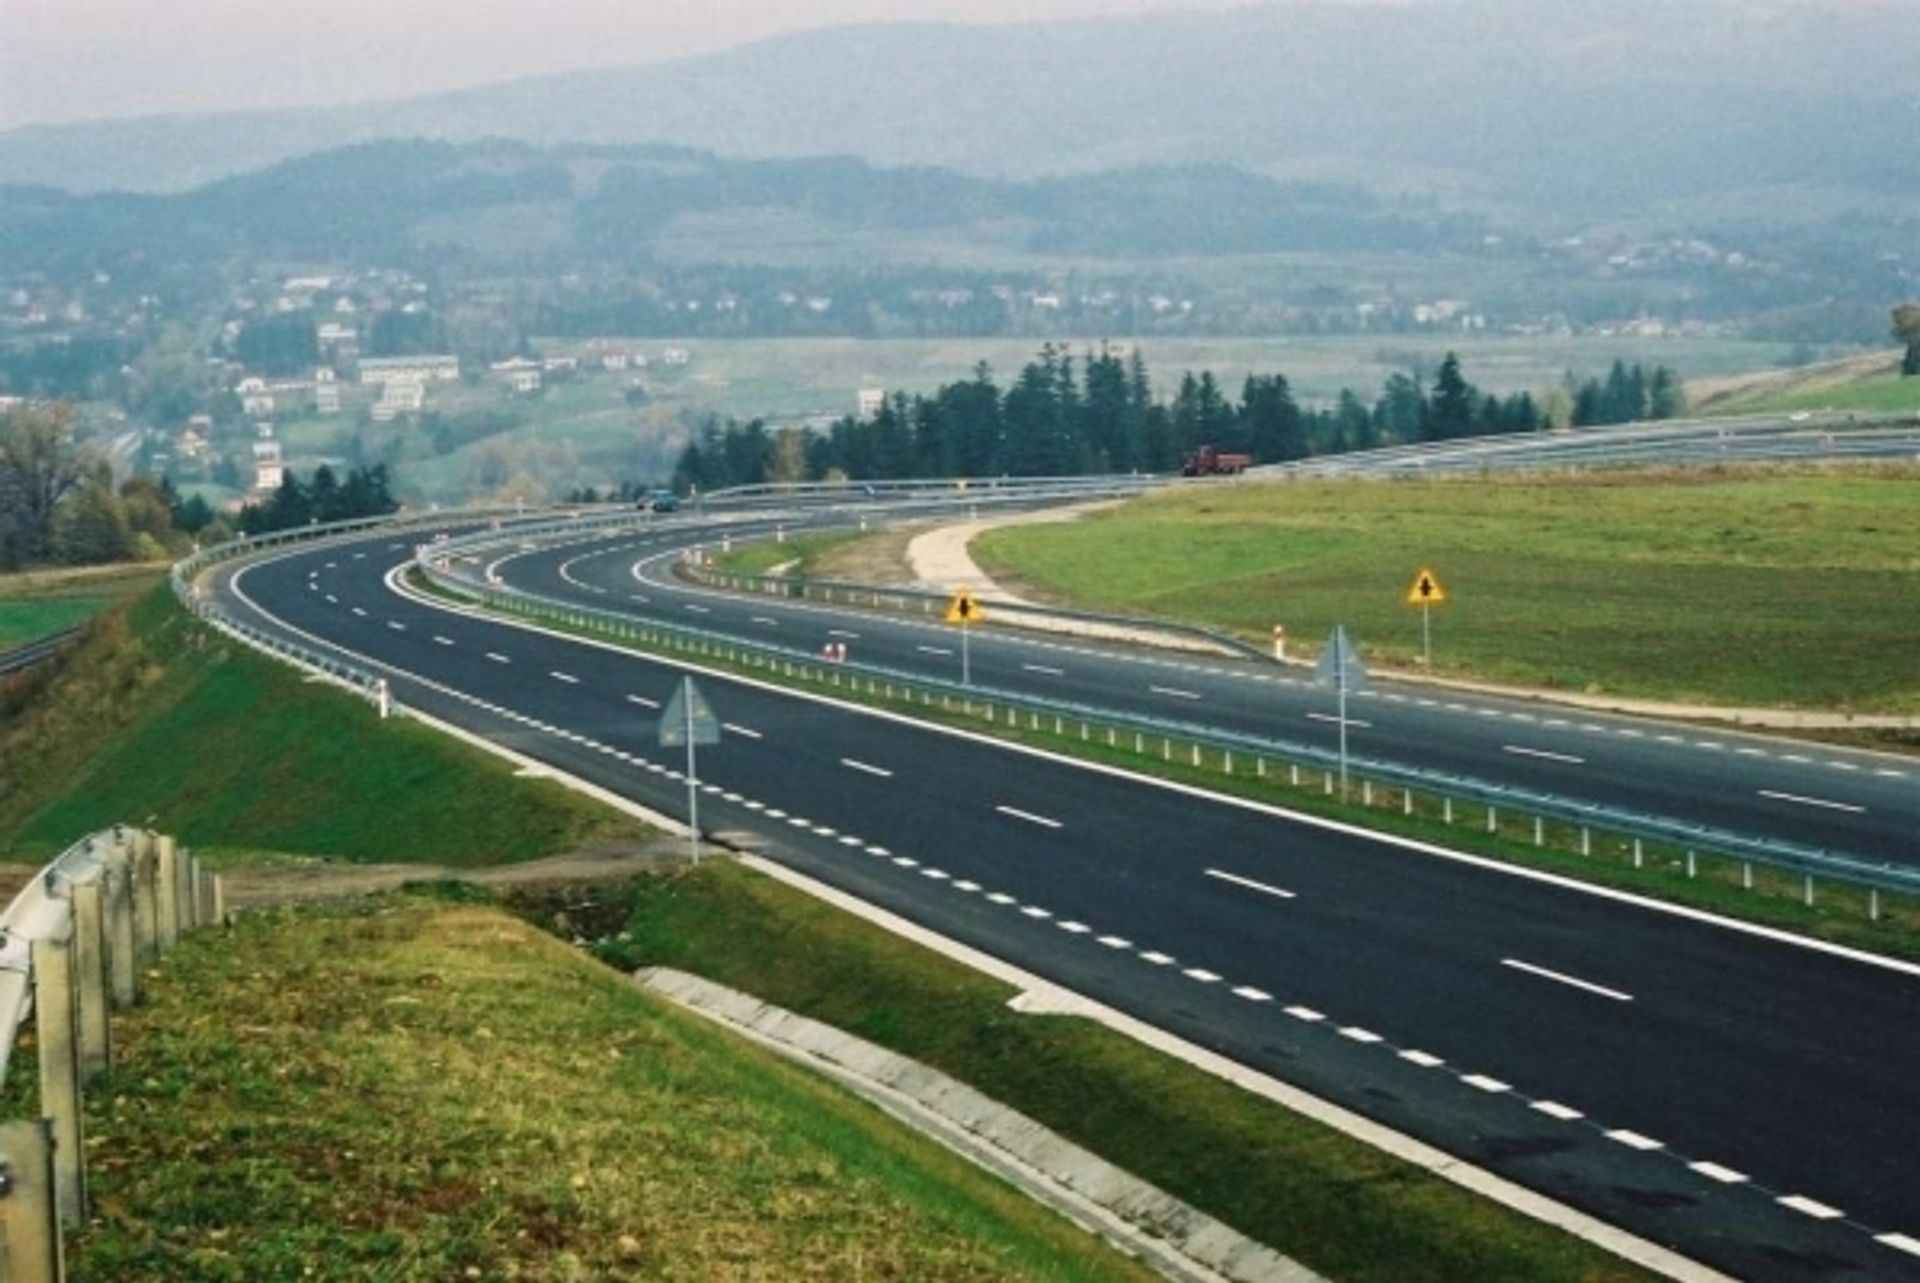  Pol-Dróg będzie utrzymywać drogi krajowe Mazowsza